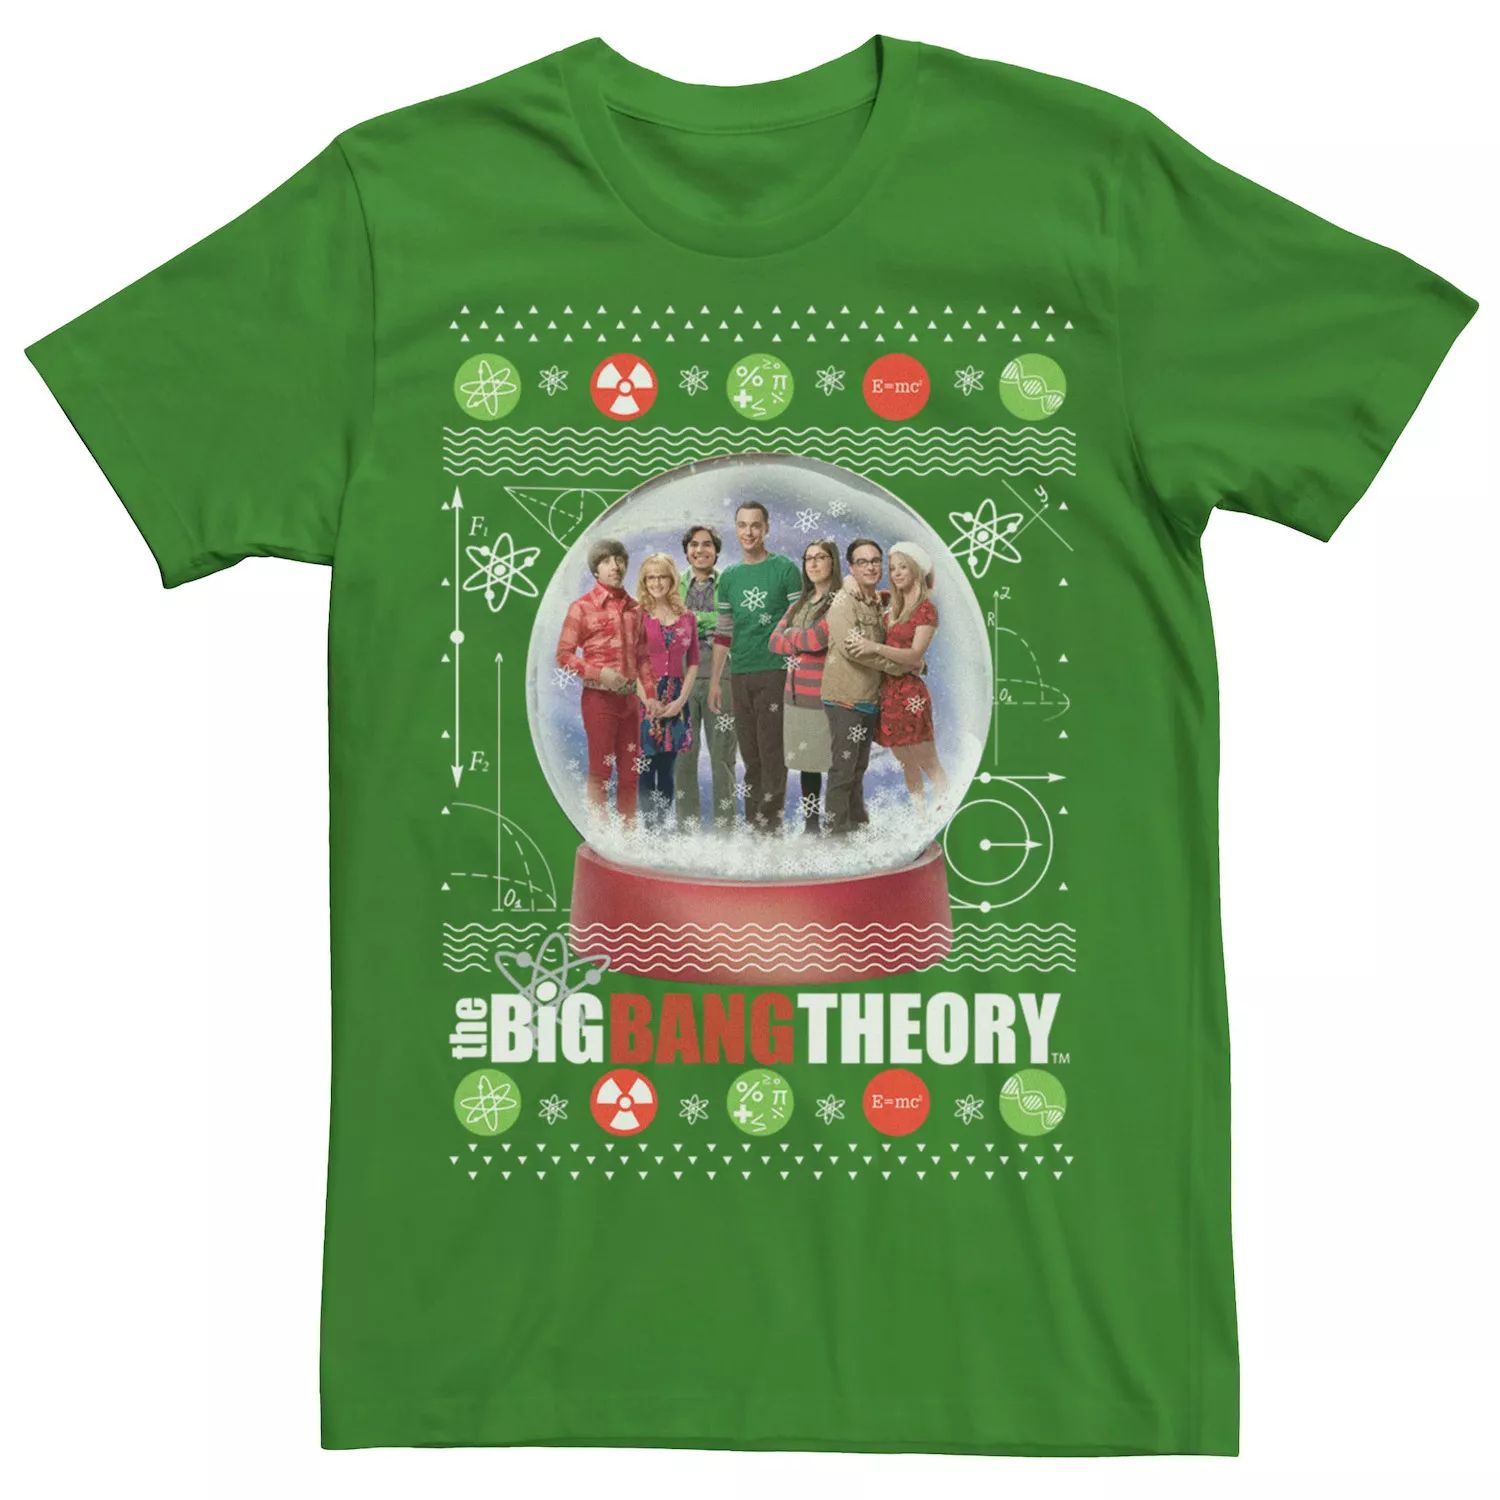 Мужская рождественская футболка с снежным глобусом «Теория большого взрыва» Licensed Character мужская футболка с принтом теория большого взрыва блестящая футболка с коротким рукавом мужская брендовая черная футболка с графическим